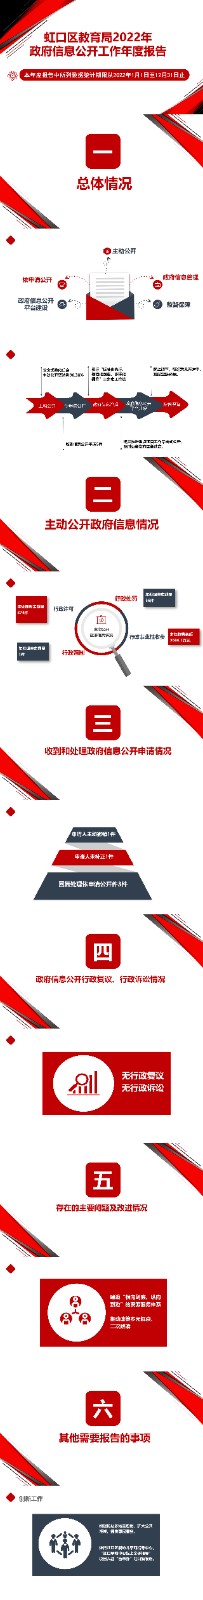 2022年虹口区教育局政府信息公开工作年度报告（图解）.jpg